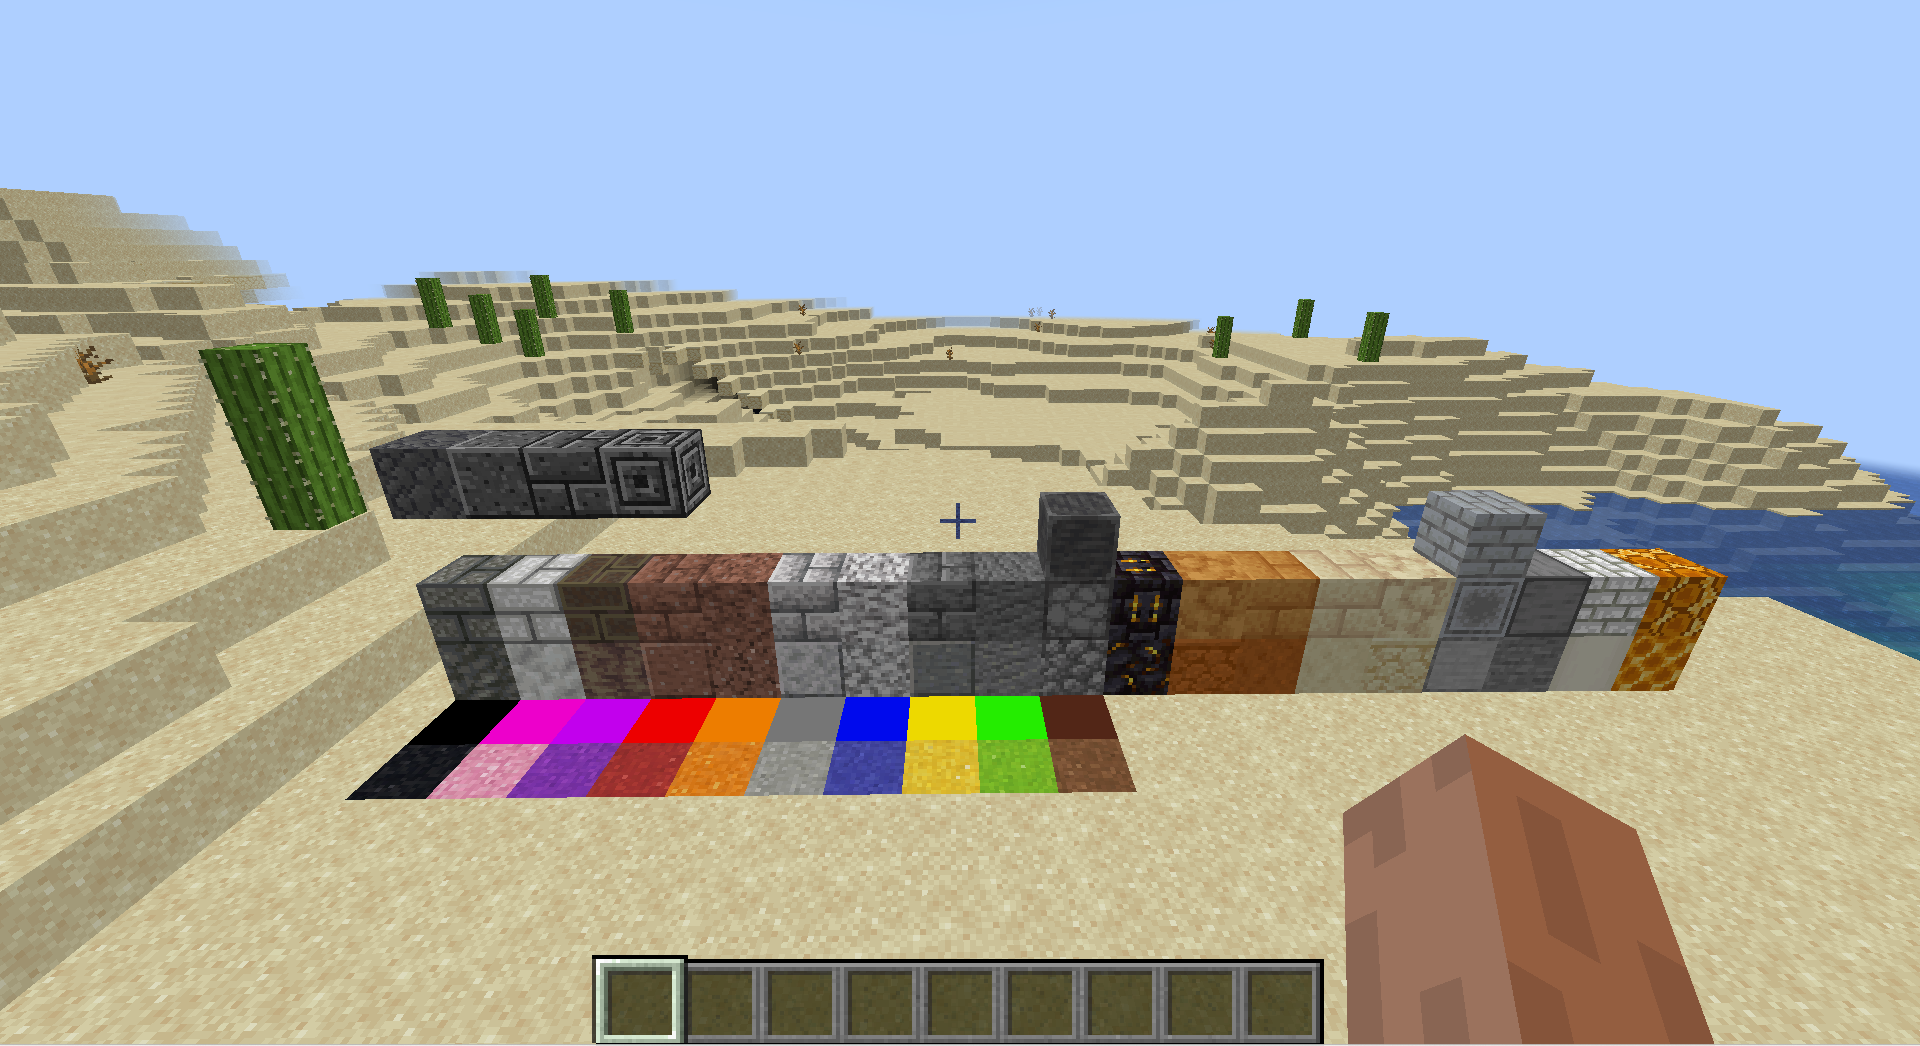 More_Building_Blocks screenshot 2